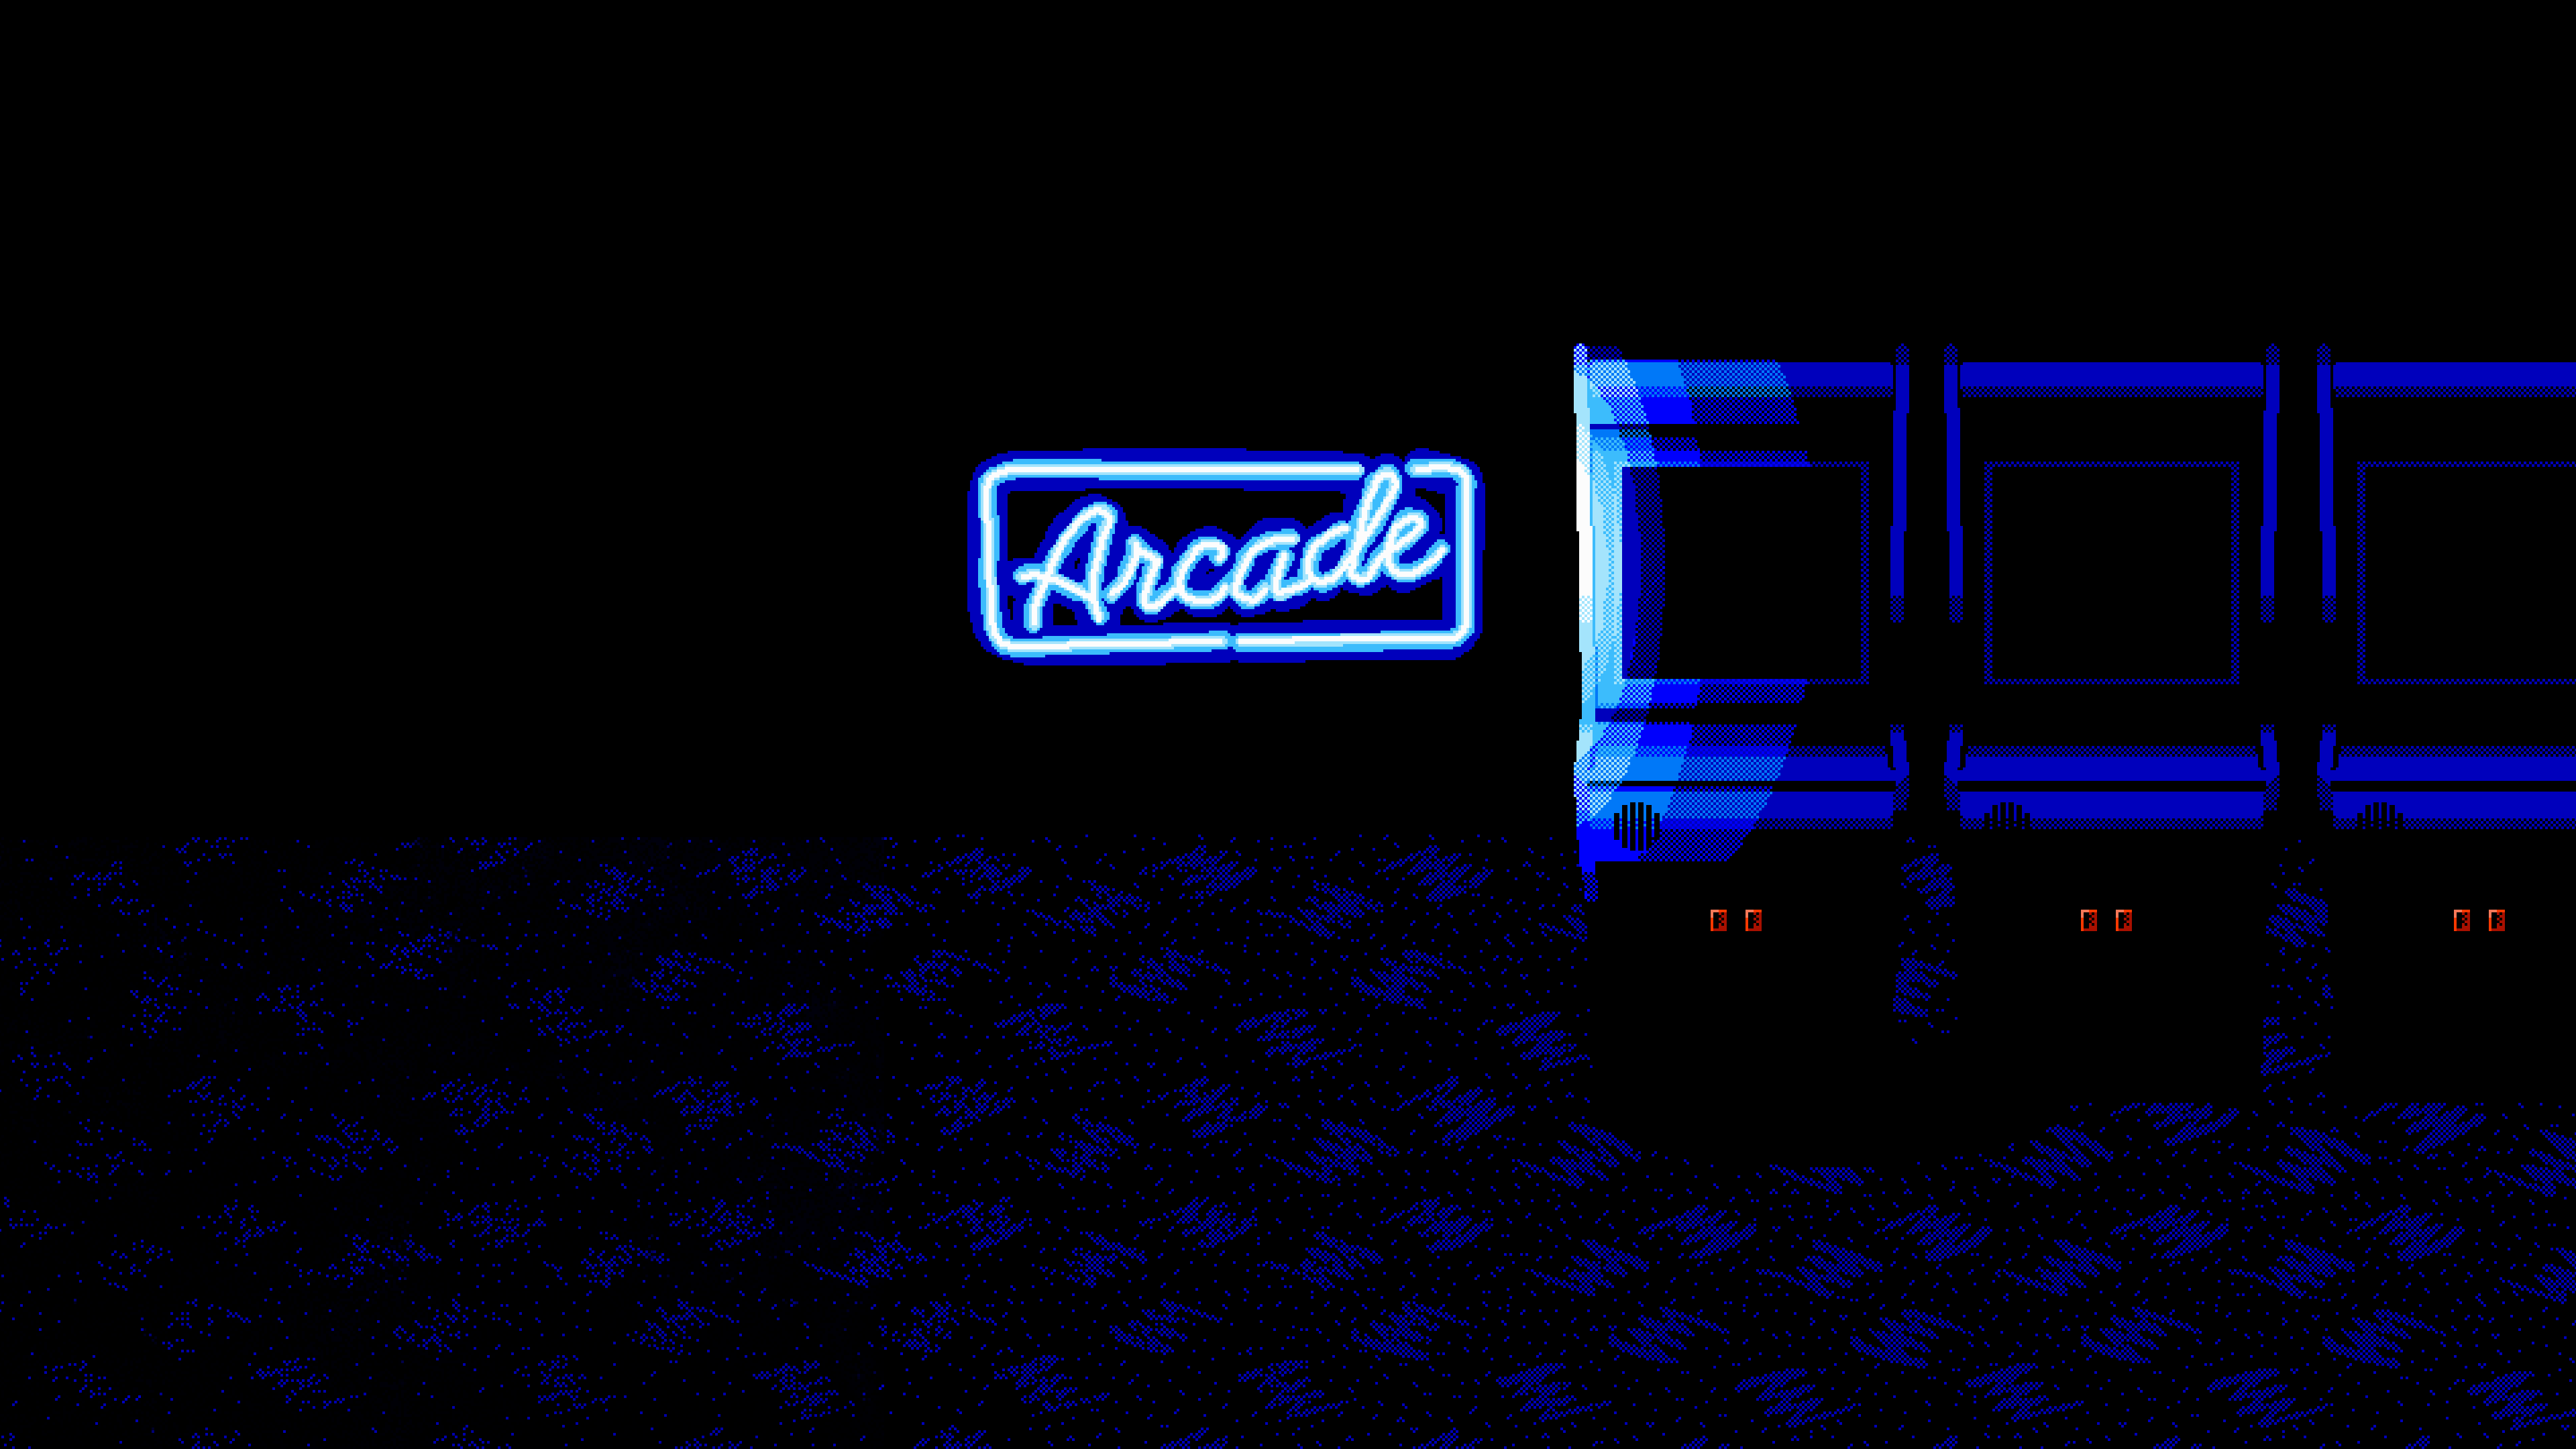 Arcade Arcade Machine Artwork Video Game Art 3840x2160